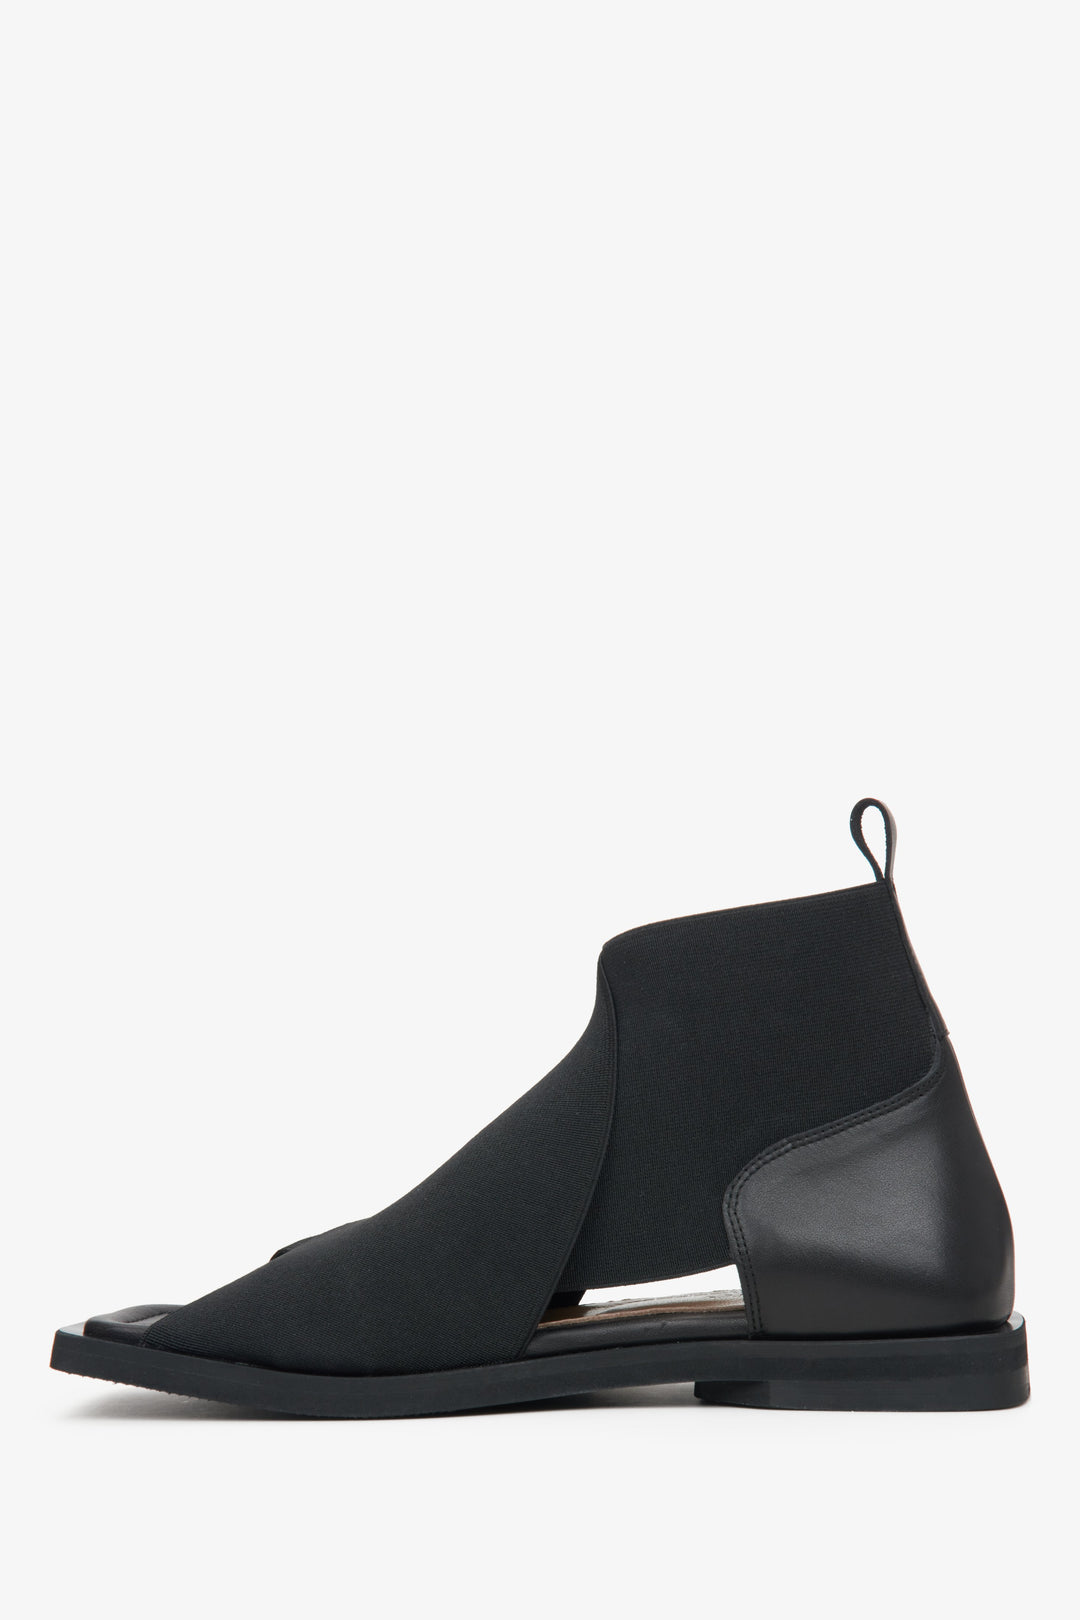 Wygodne sandały damskie z miękkimi paskami w kolorze czarnym Estro - profil buta.